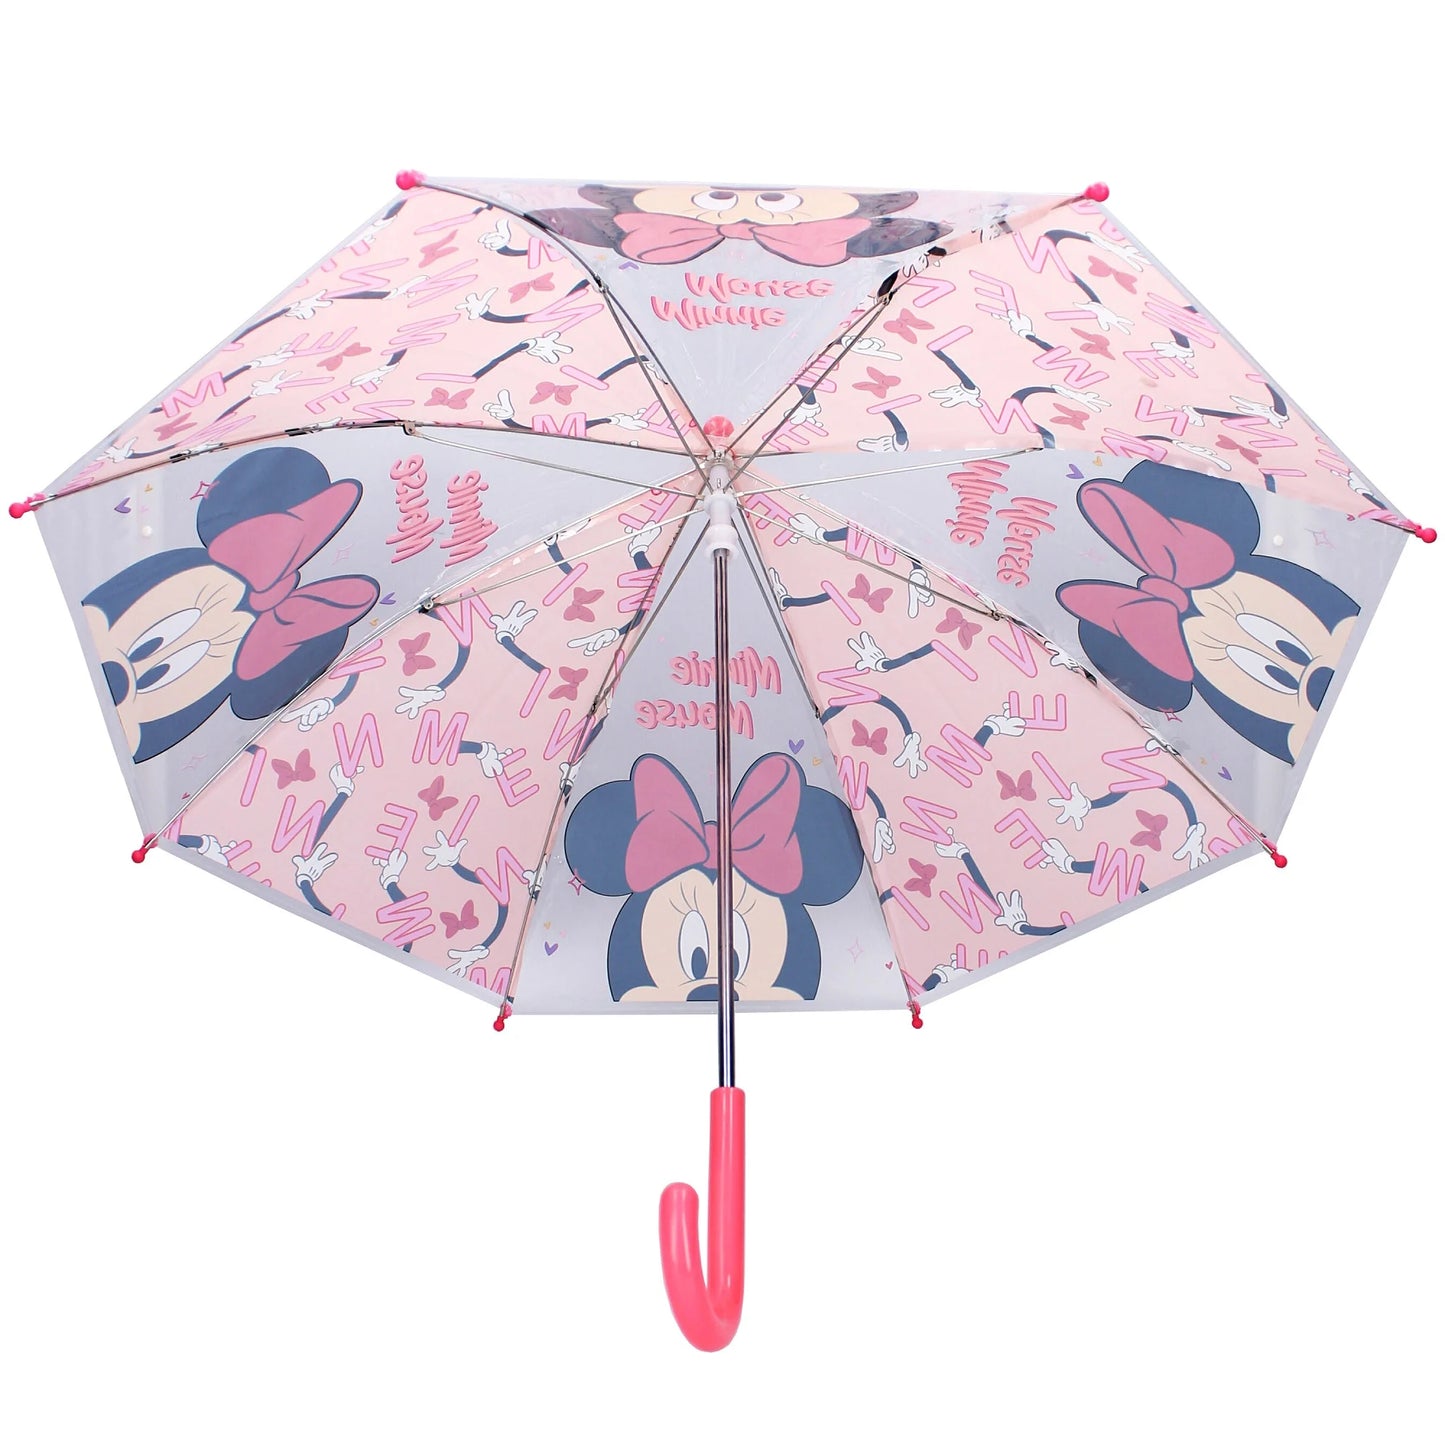 Deze schattige Minnie Mouse paraplu uit de “Sunny Days Ahead” collectie is voorzien van een speelse print en een ronde handgreep voor comfortabel gebruik, zelfs op regenachtige dagen.